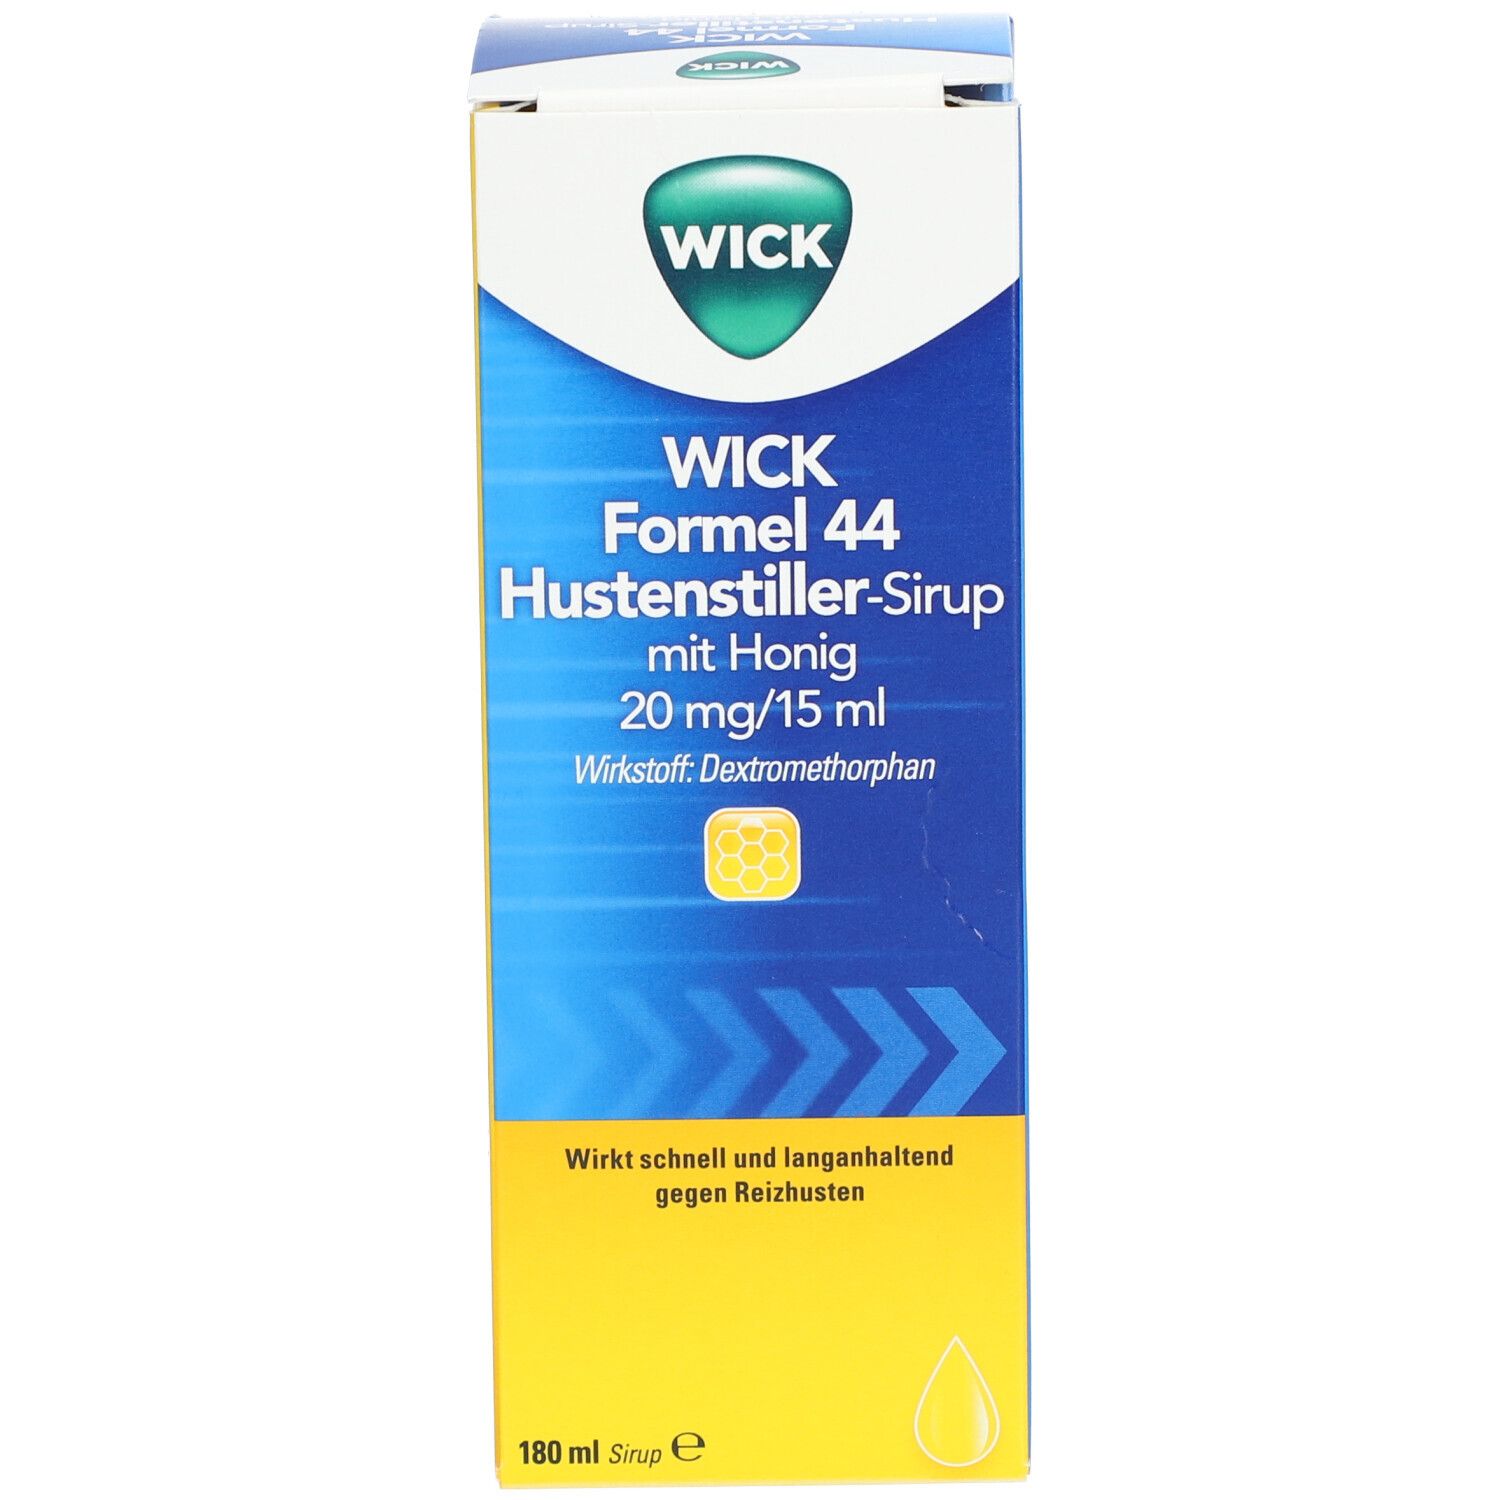 WICK Formel 44 Hustenstiller-Sirup mit Honig